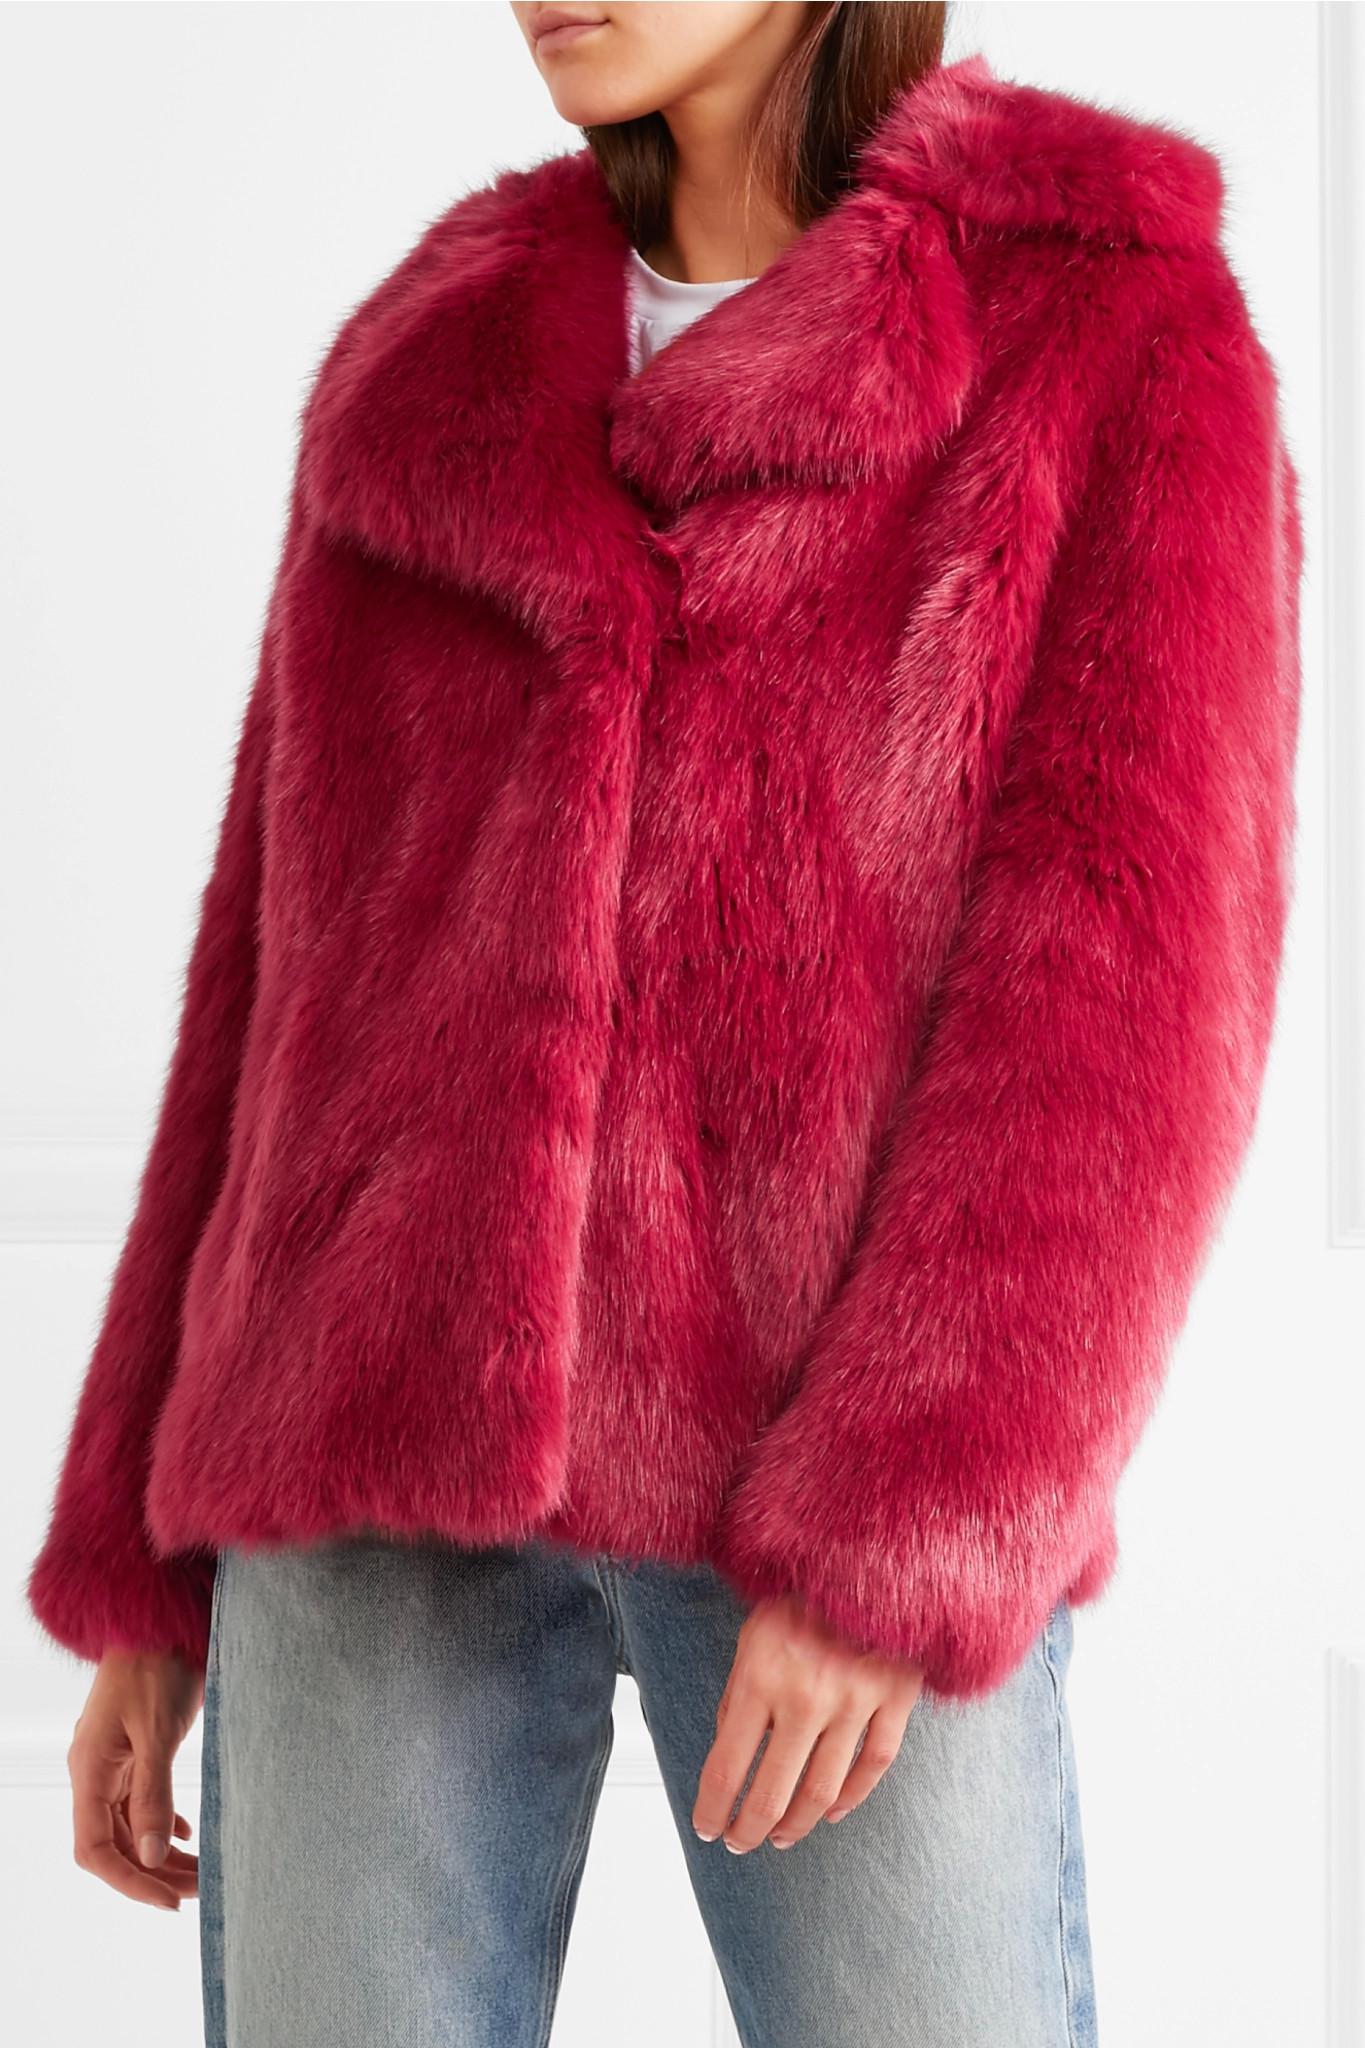 michael kors pink fur coat